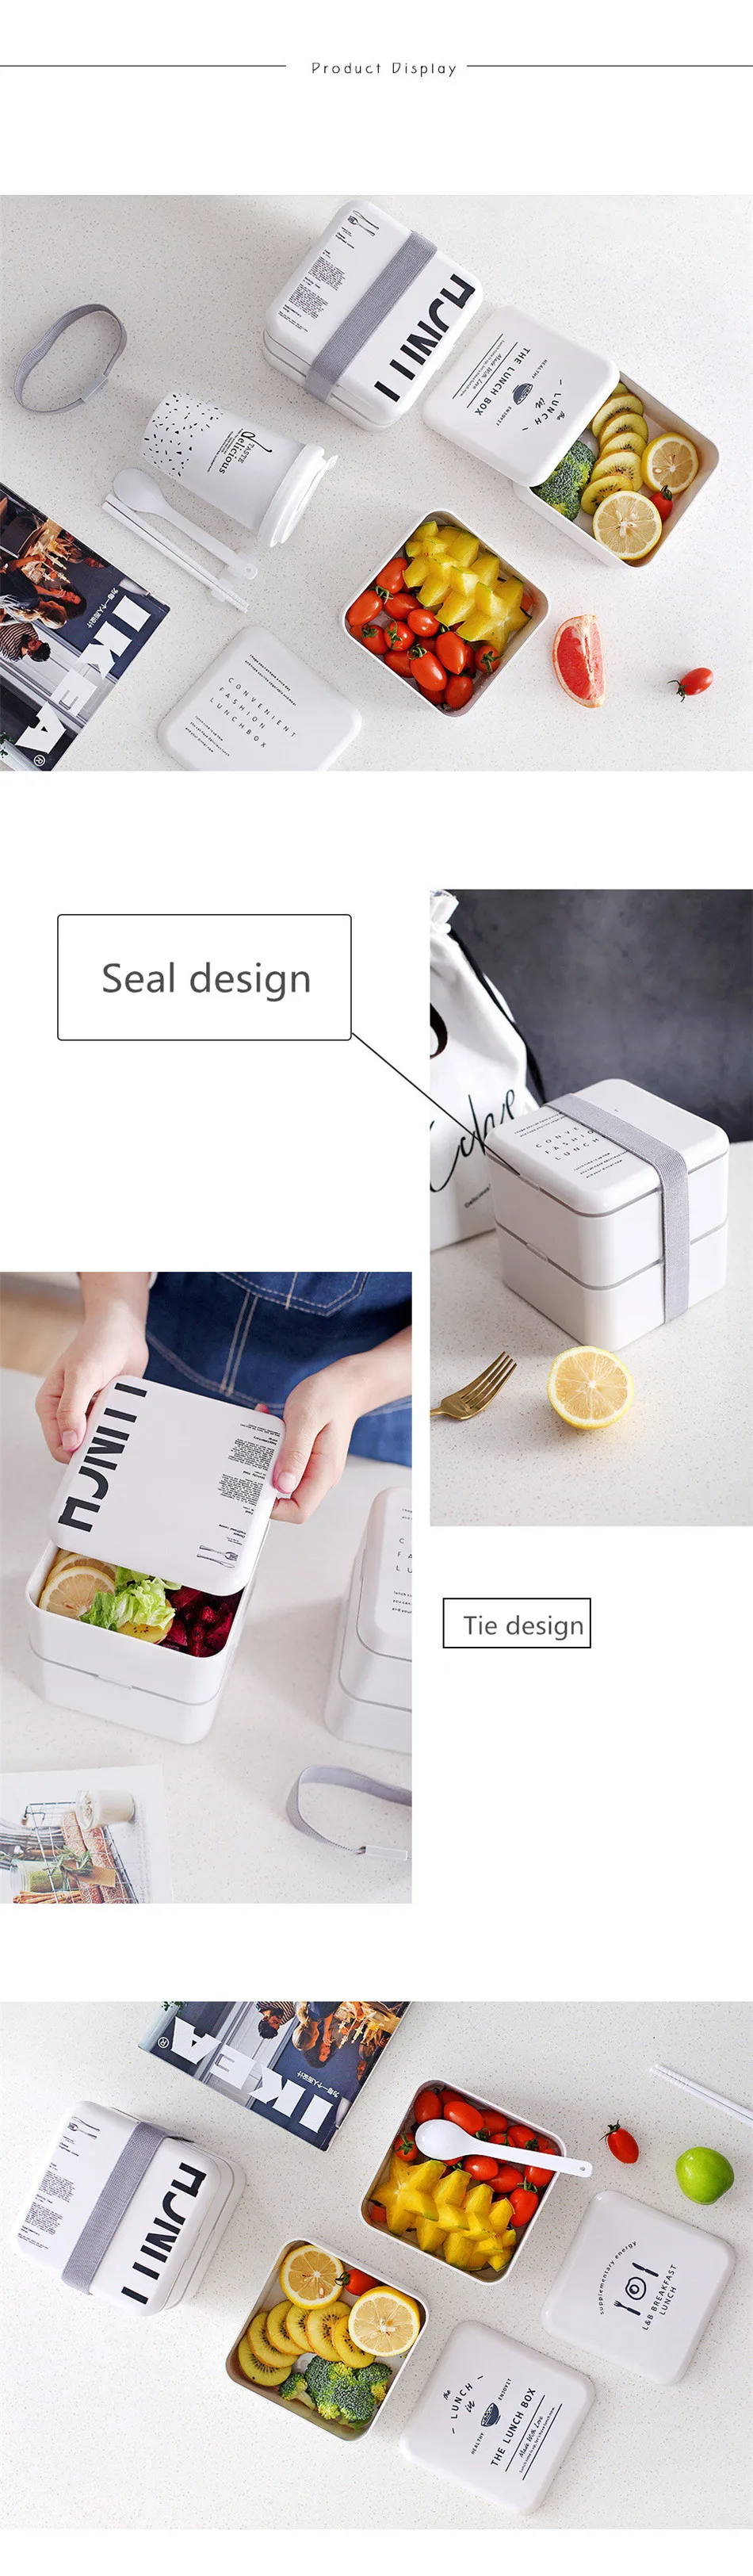 Baispo японский стиль Ланч-бокс для детей 2 слоя Портативный Bento box Герметичный пищевой контейнер для пикника студенческий контейнер для еды